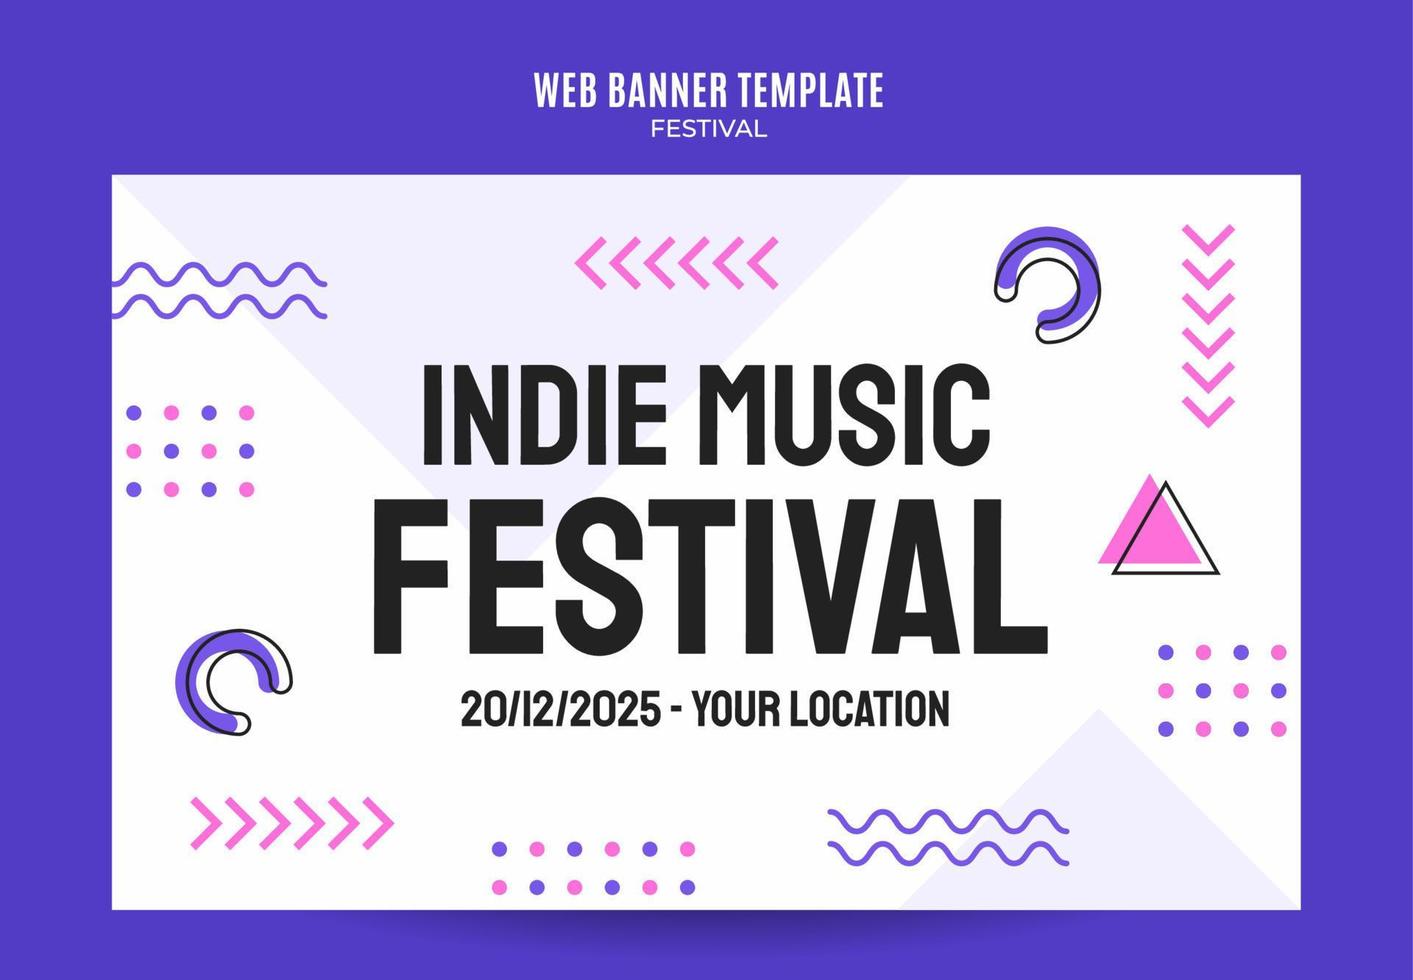 banner web del festival para póster de medios sociales, banner, área espacial y fondo vector